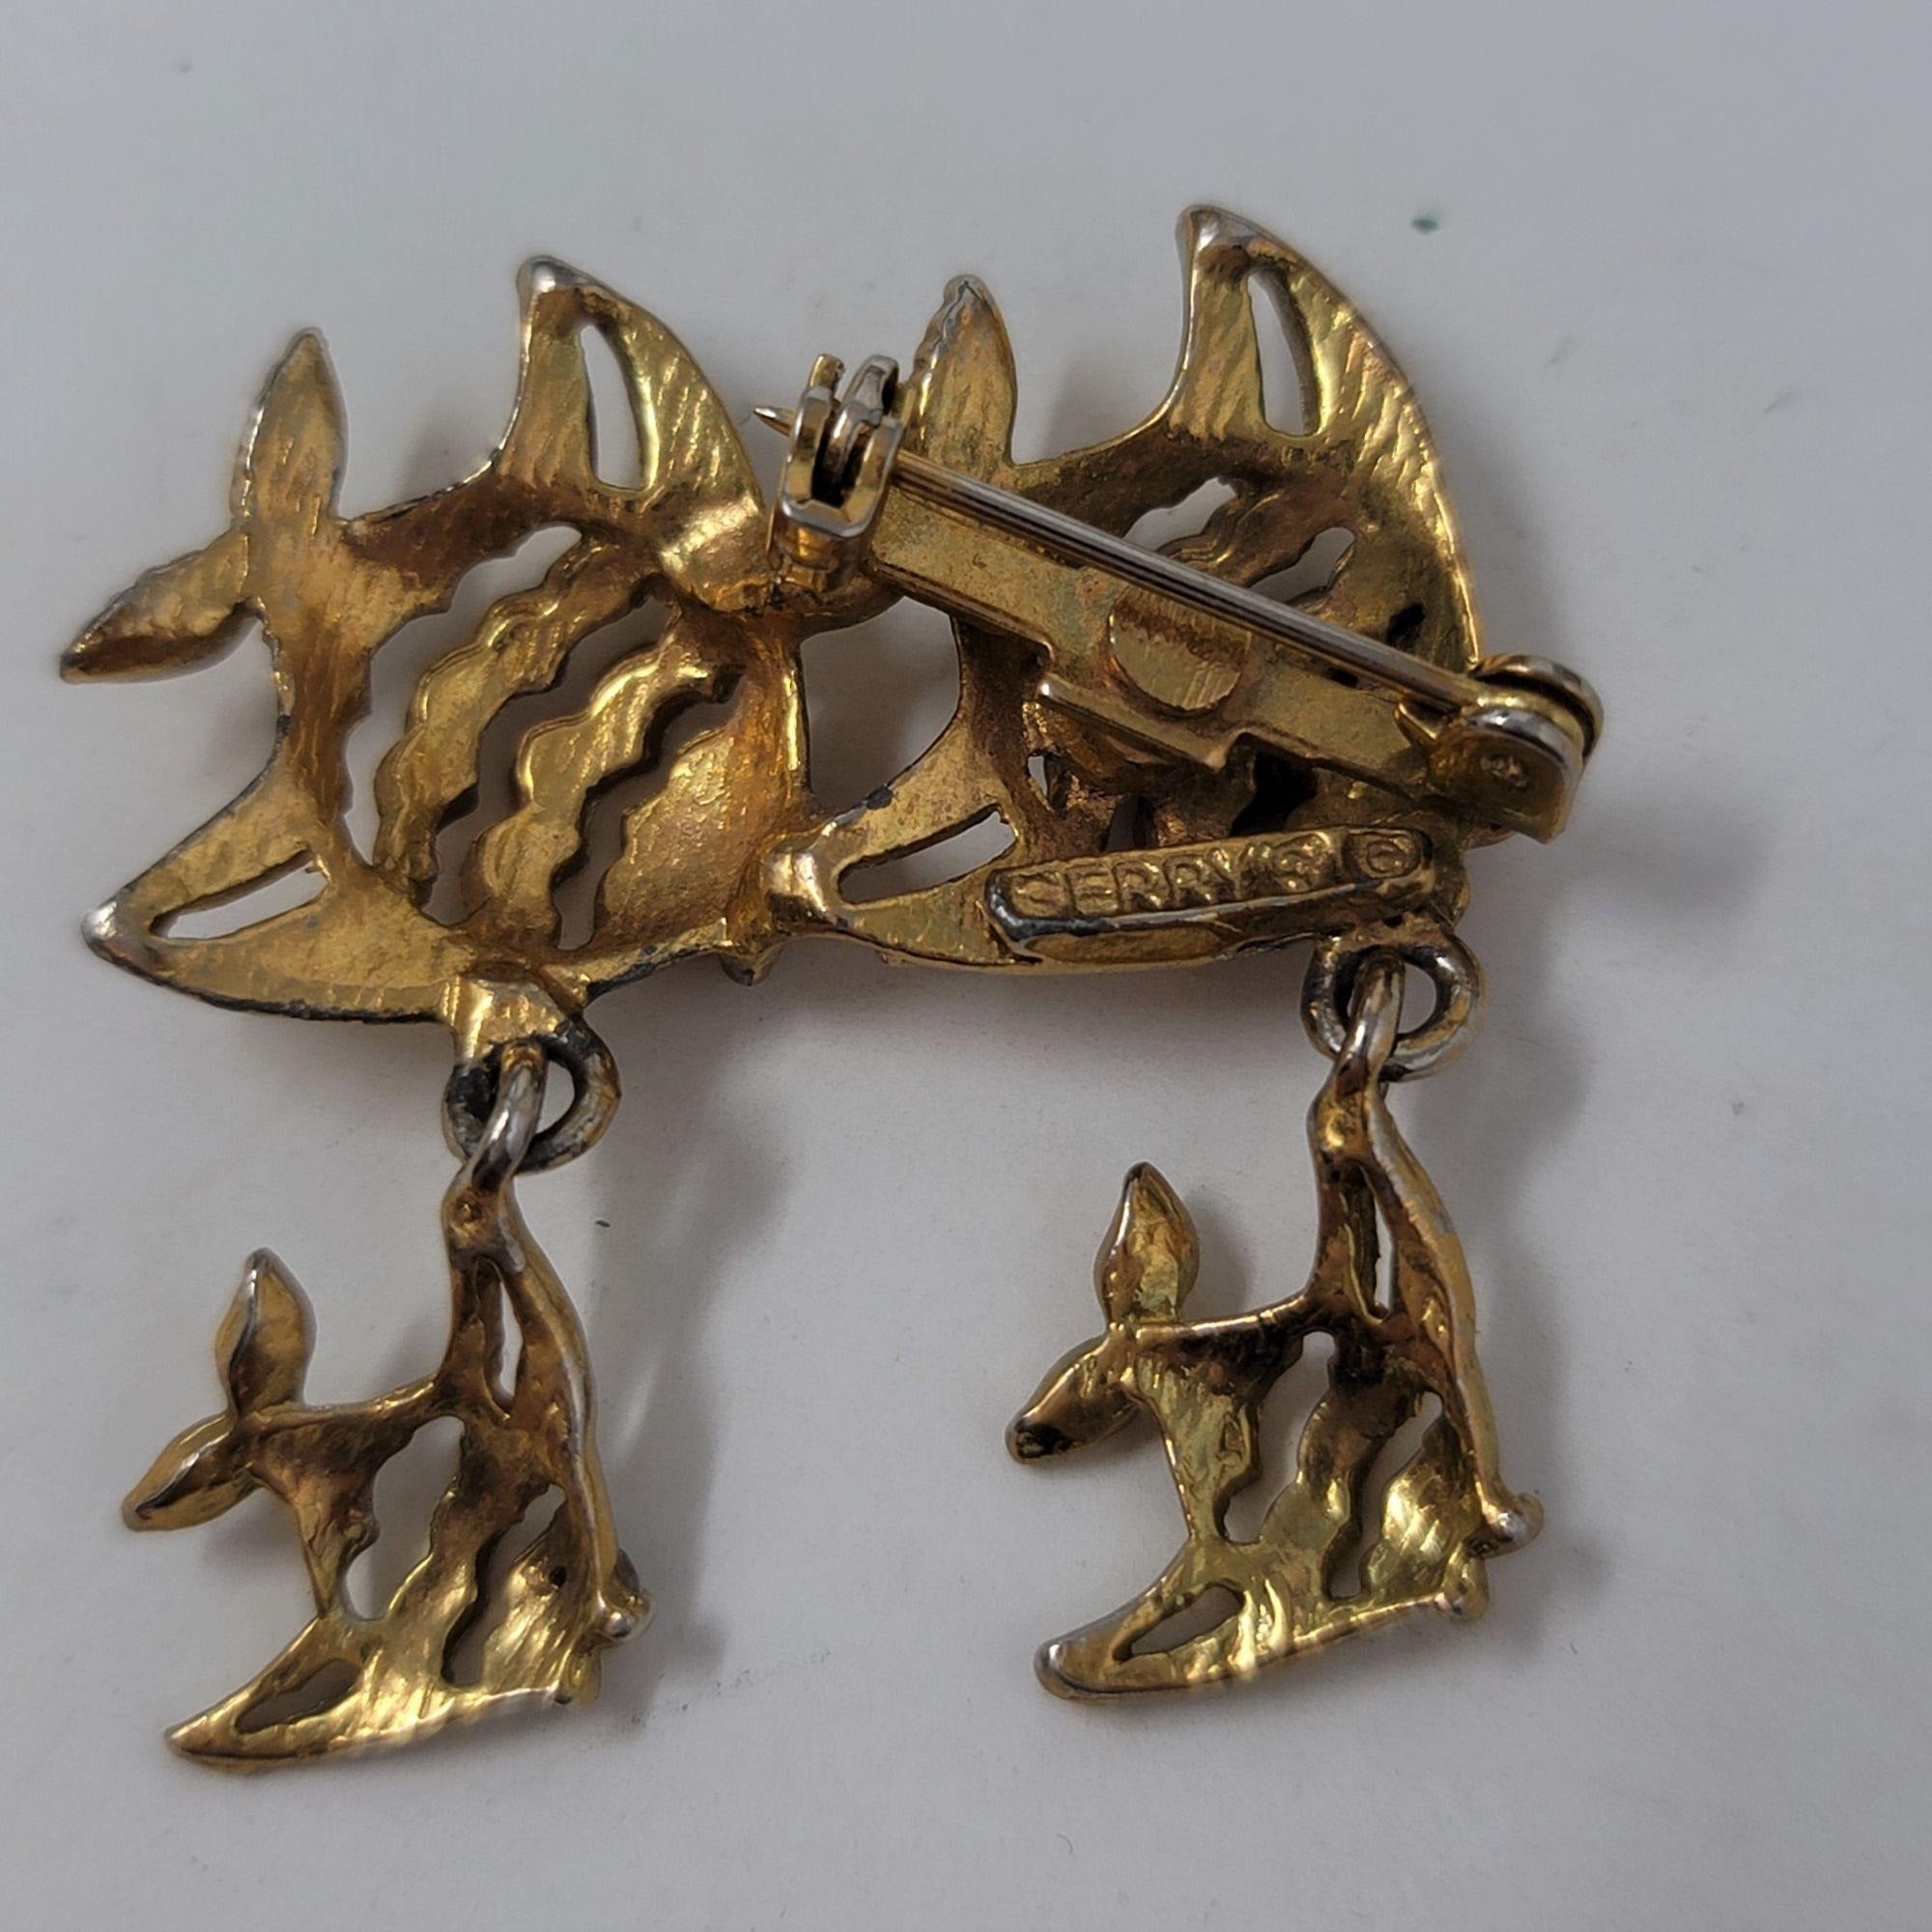 A School of Fish Pin Brooch Rhinestone Eyes Gold